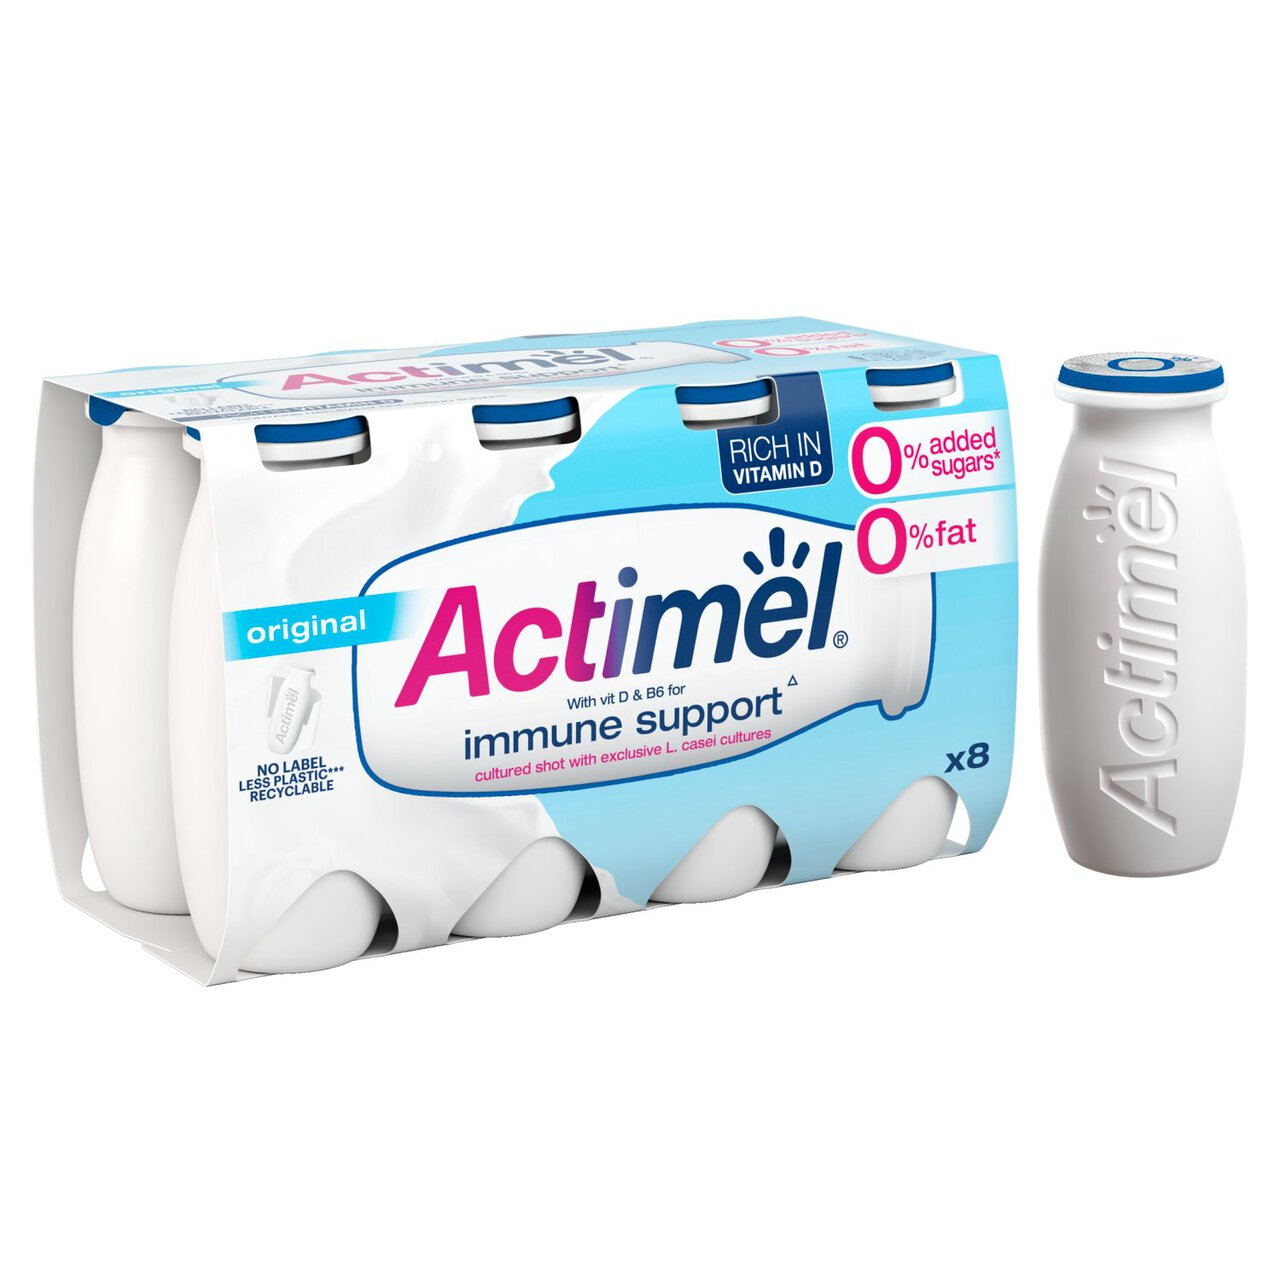 Actimel Original Added Drink Free Fat 100g Yoghurt 0% Sugar 8 | Zoom x